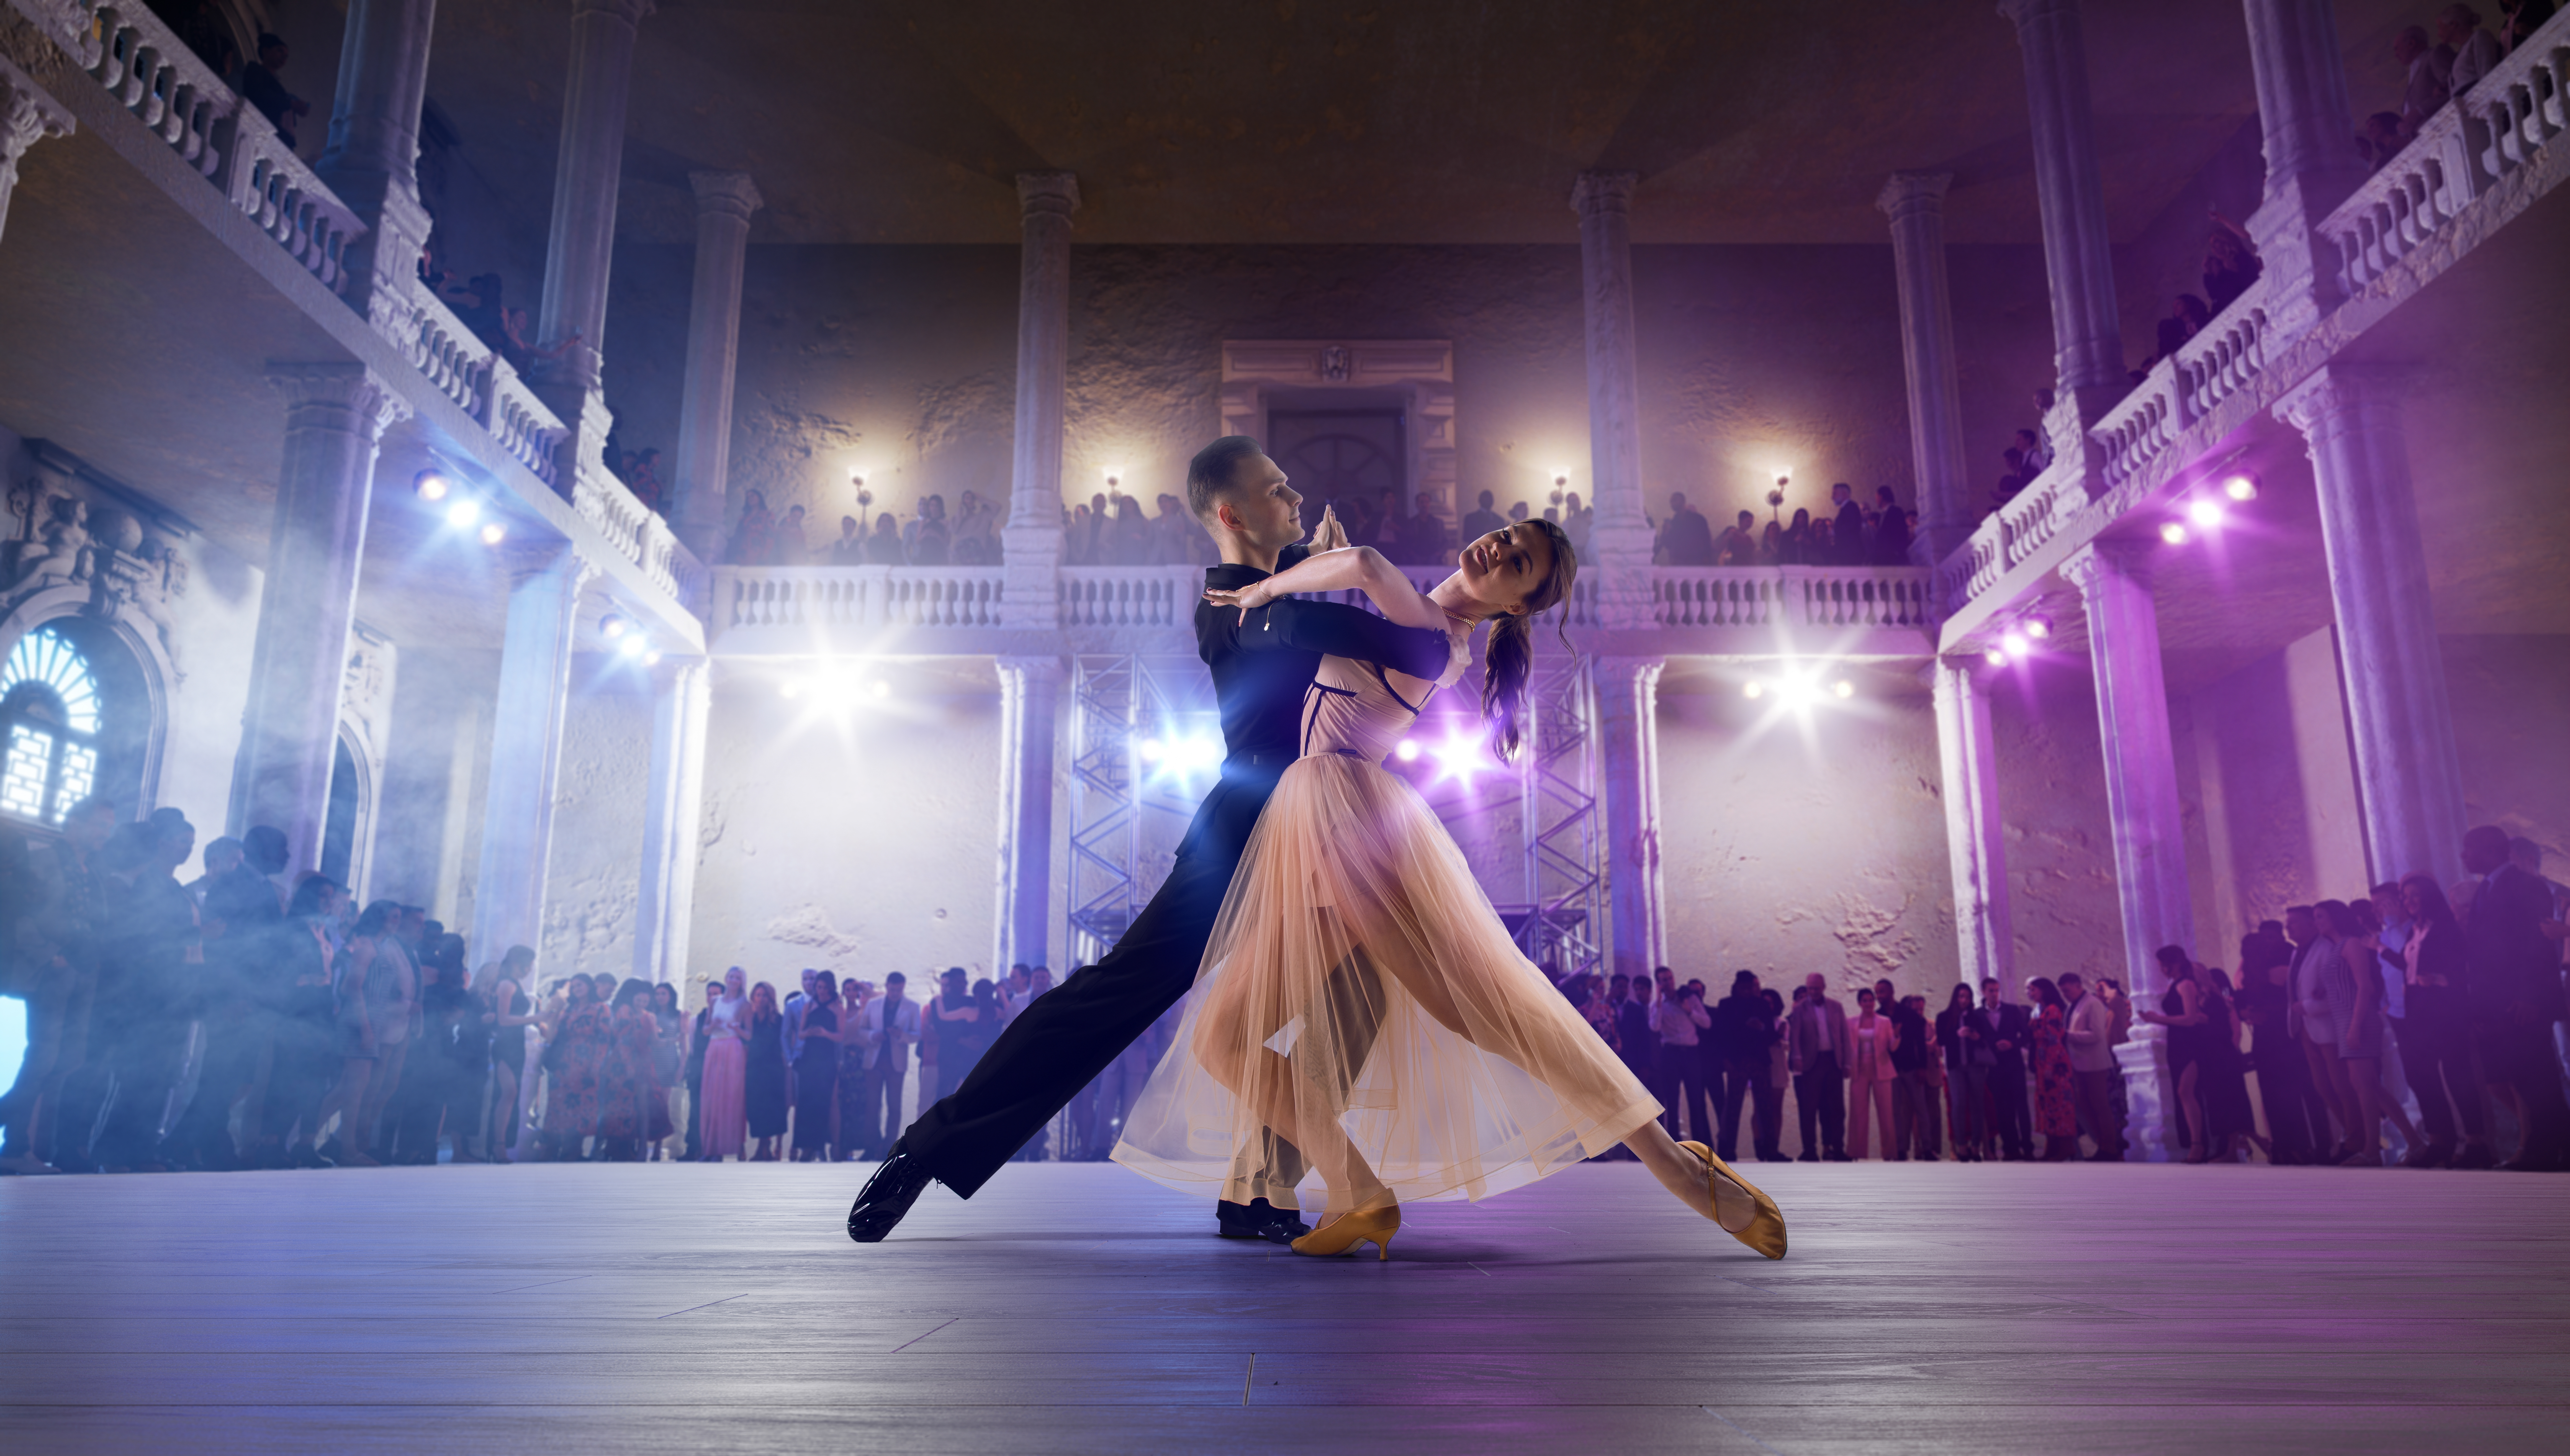 華麗なる舞台裏 – 社交ダンスの衣装の魅力と秘密